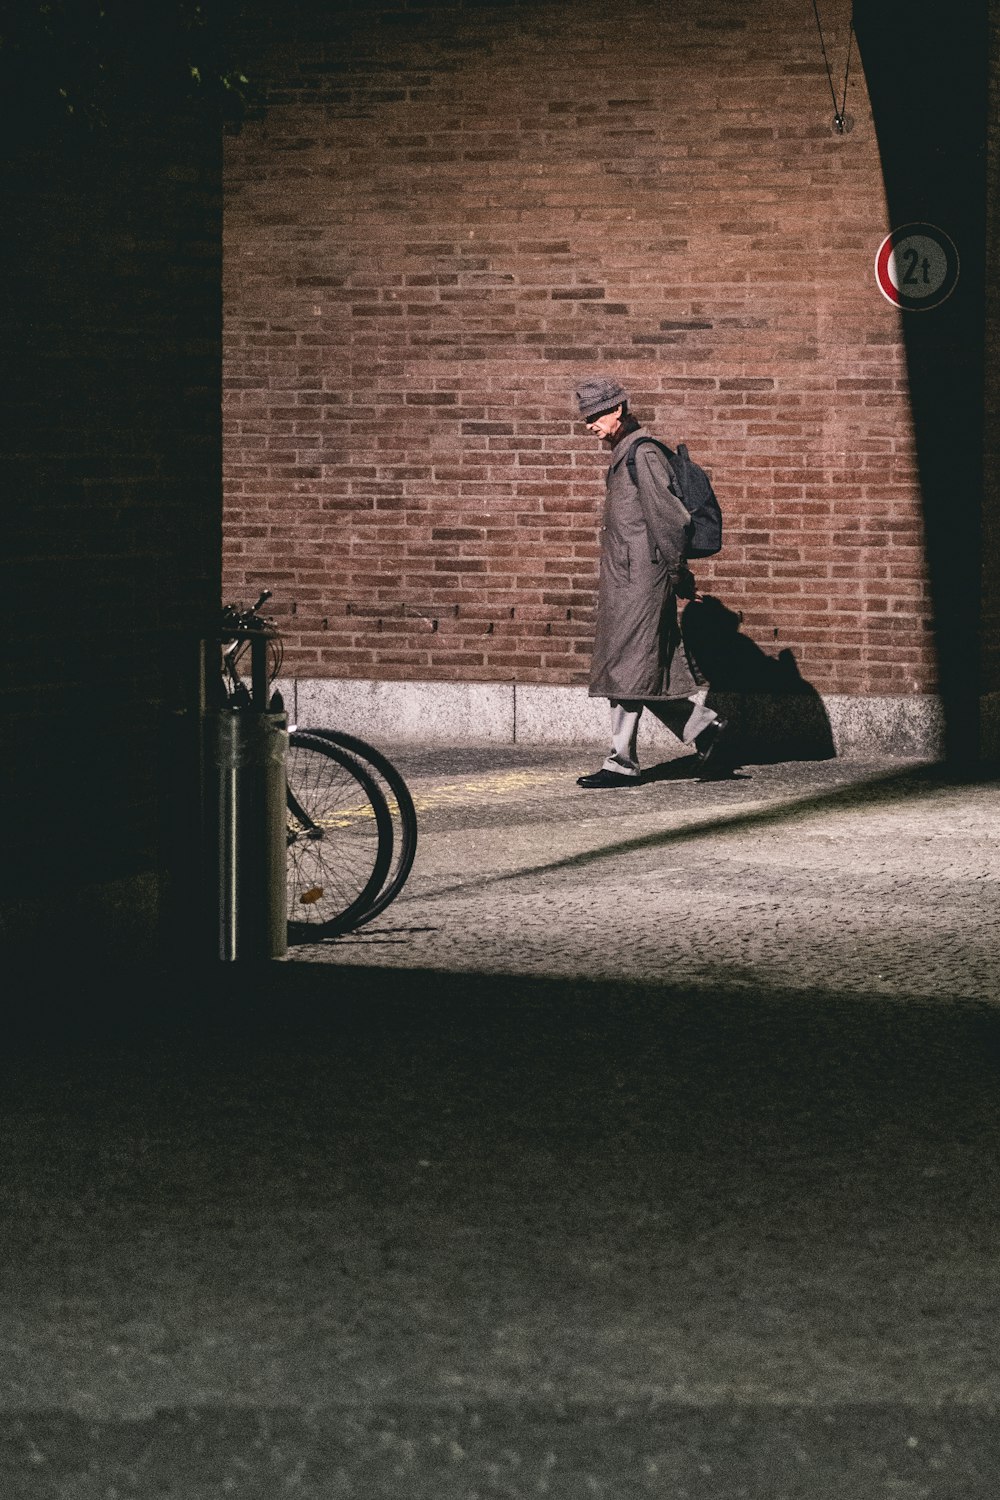 man walking in alley